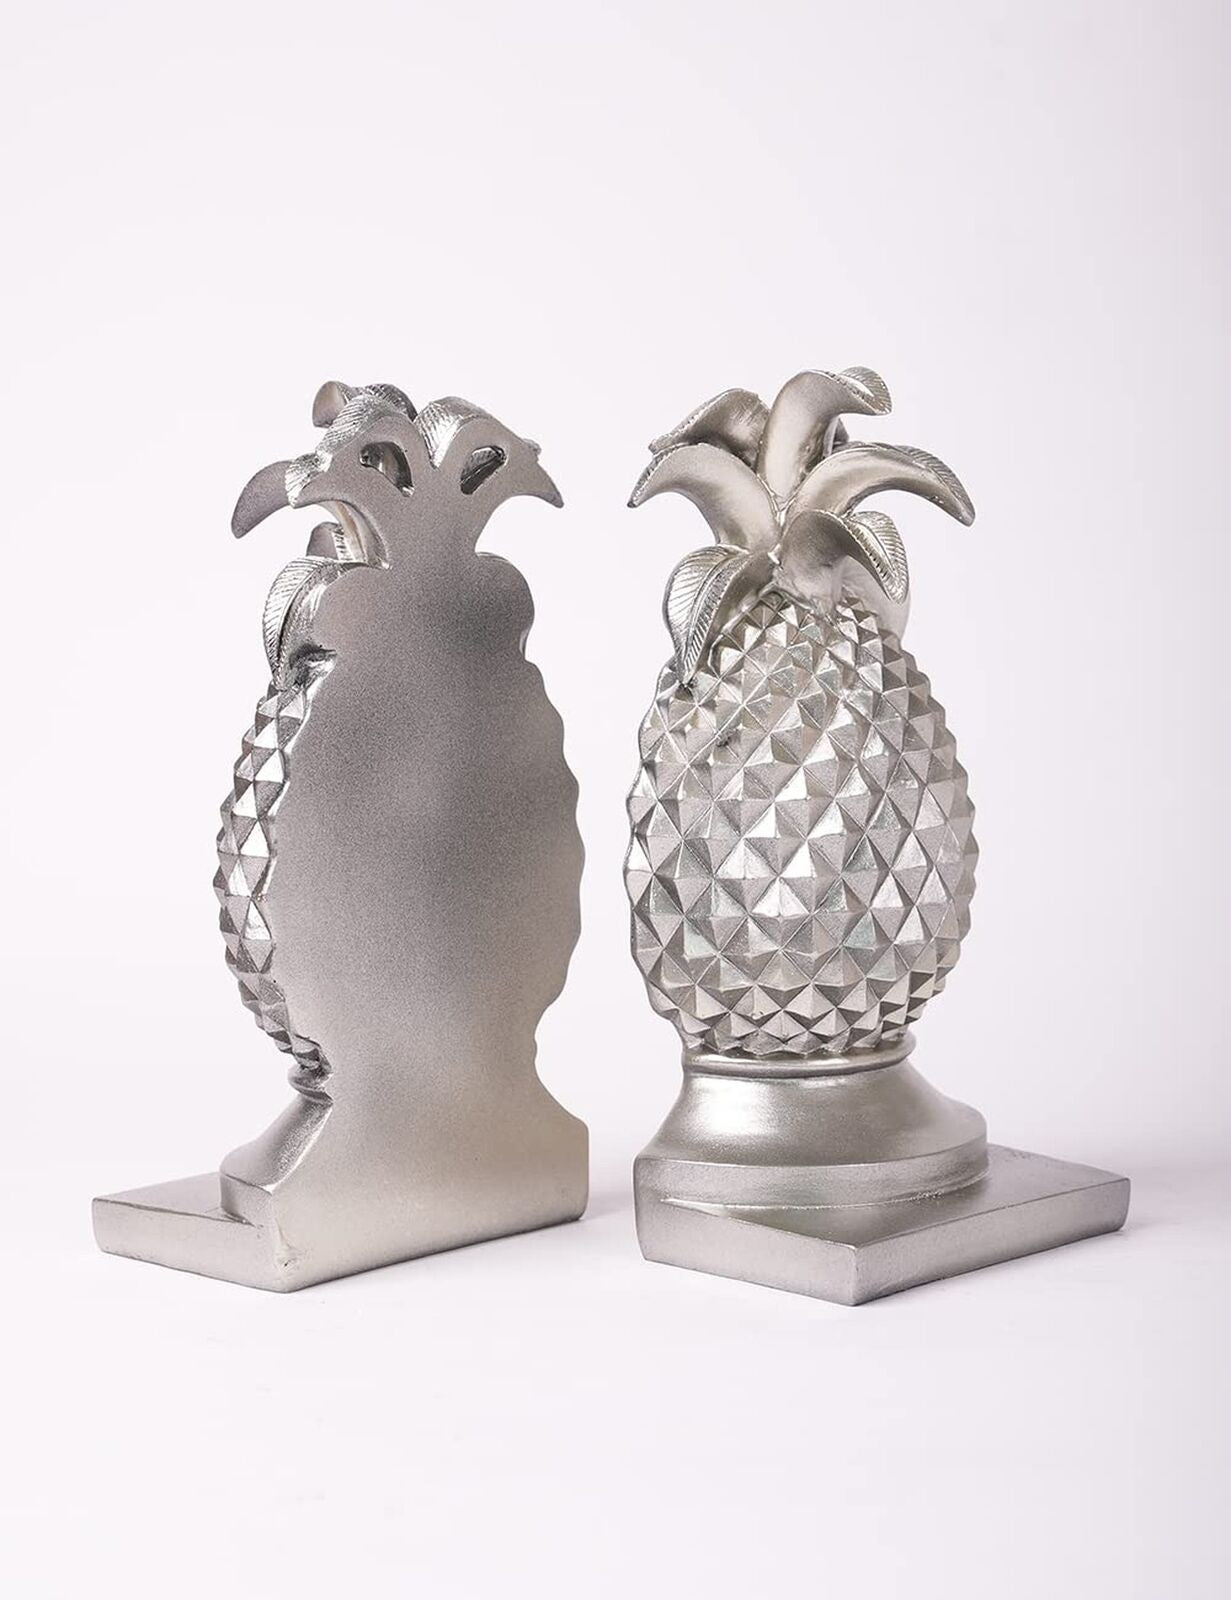 HAUCOZE Decorative Book Ends Pineapple Statue Sculpture Polyresin Figurine Gi...